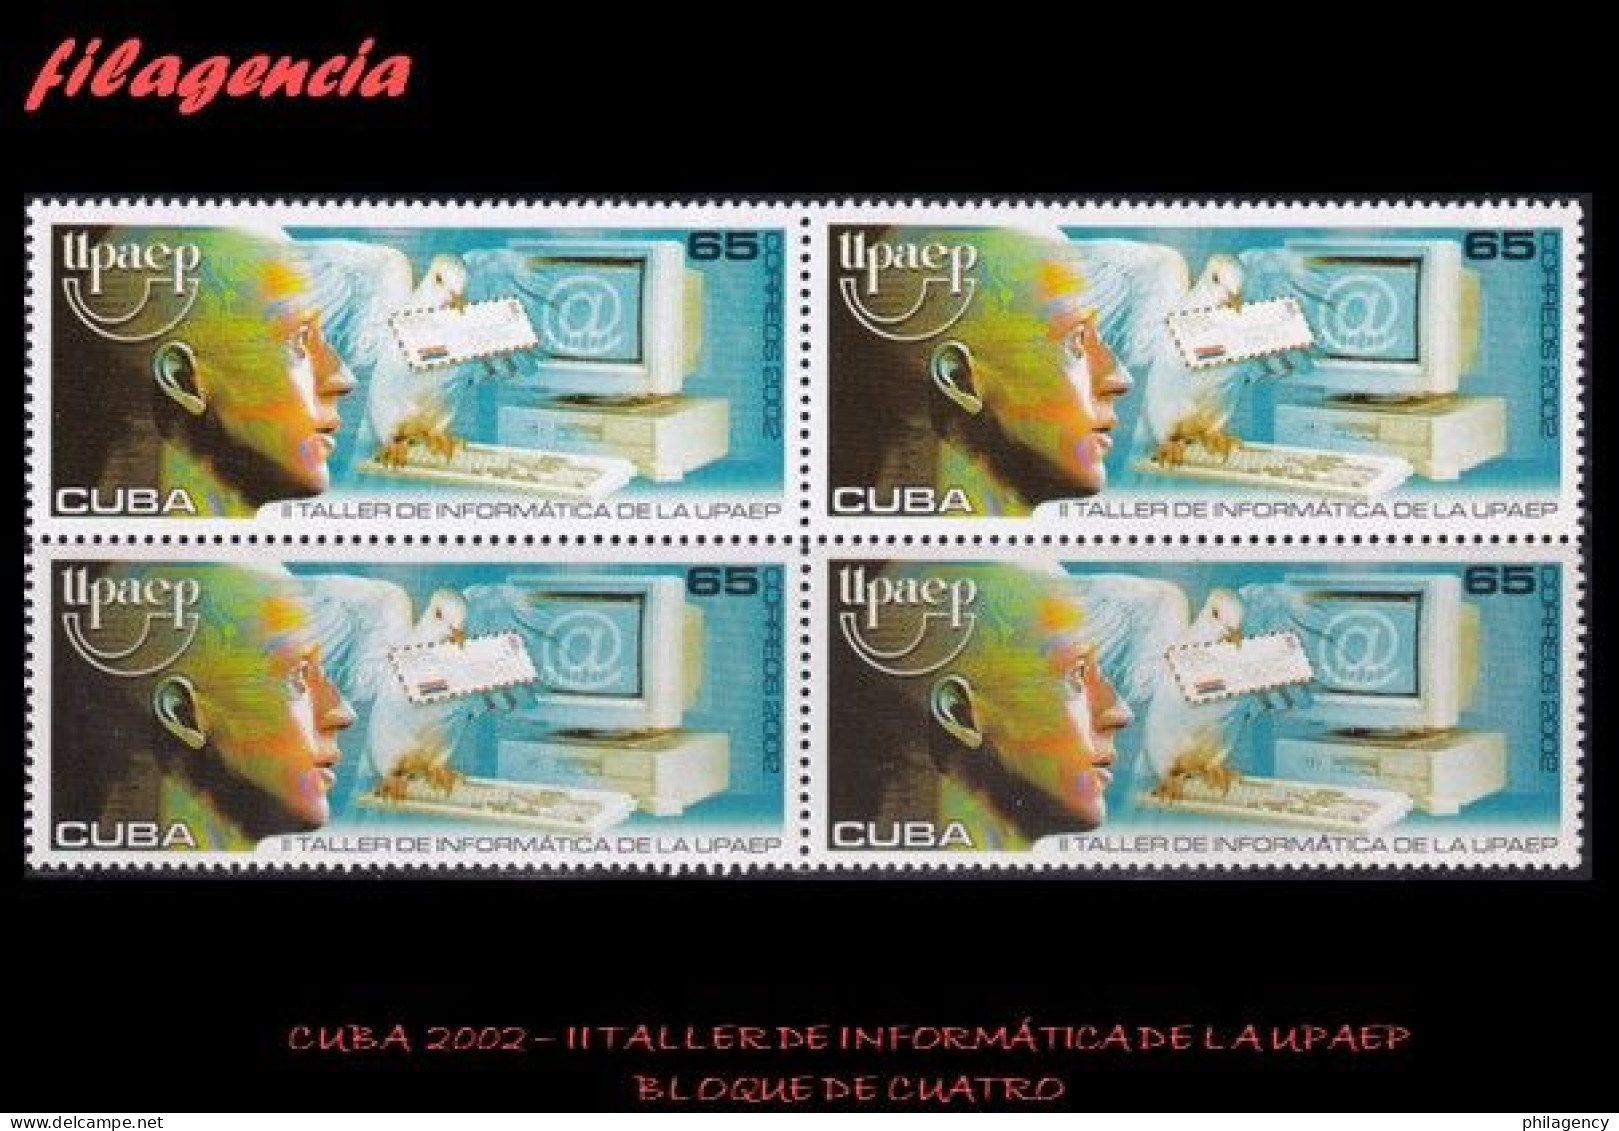 CUBA. BLOQUES DE CUATRO. 2002-03 II TALLER DE INFORMÁTICA DE LA UPAEP - Unused Stamps